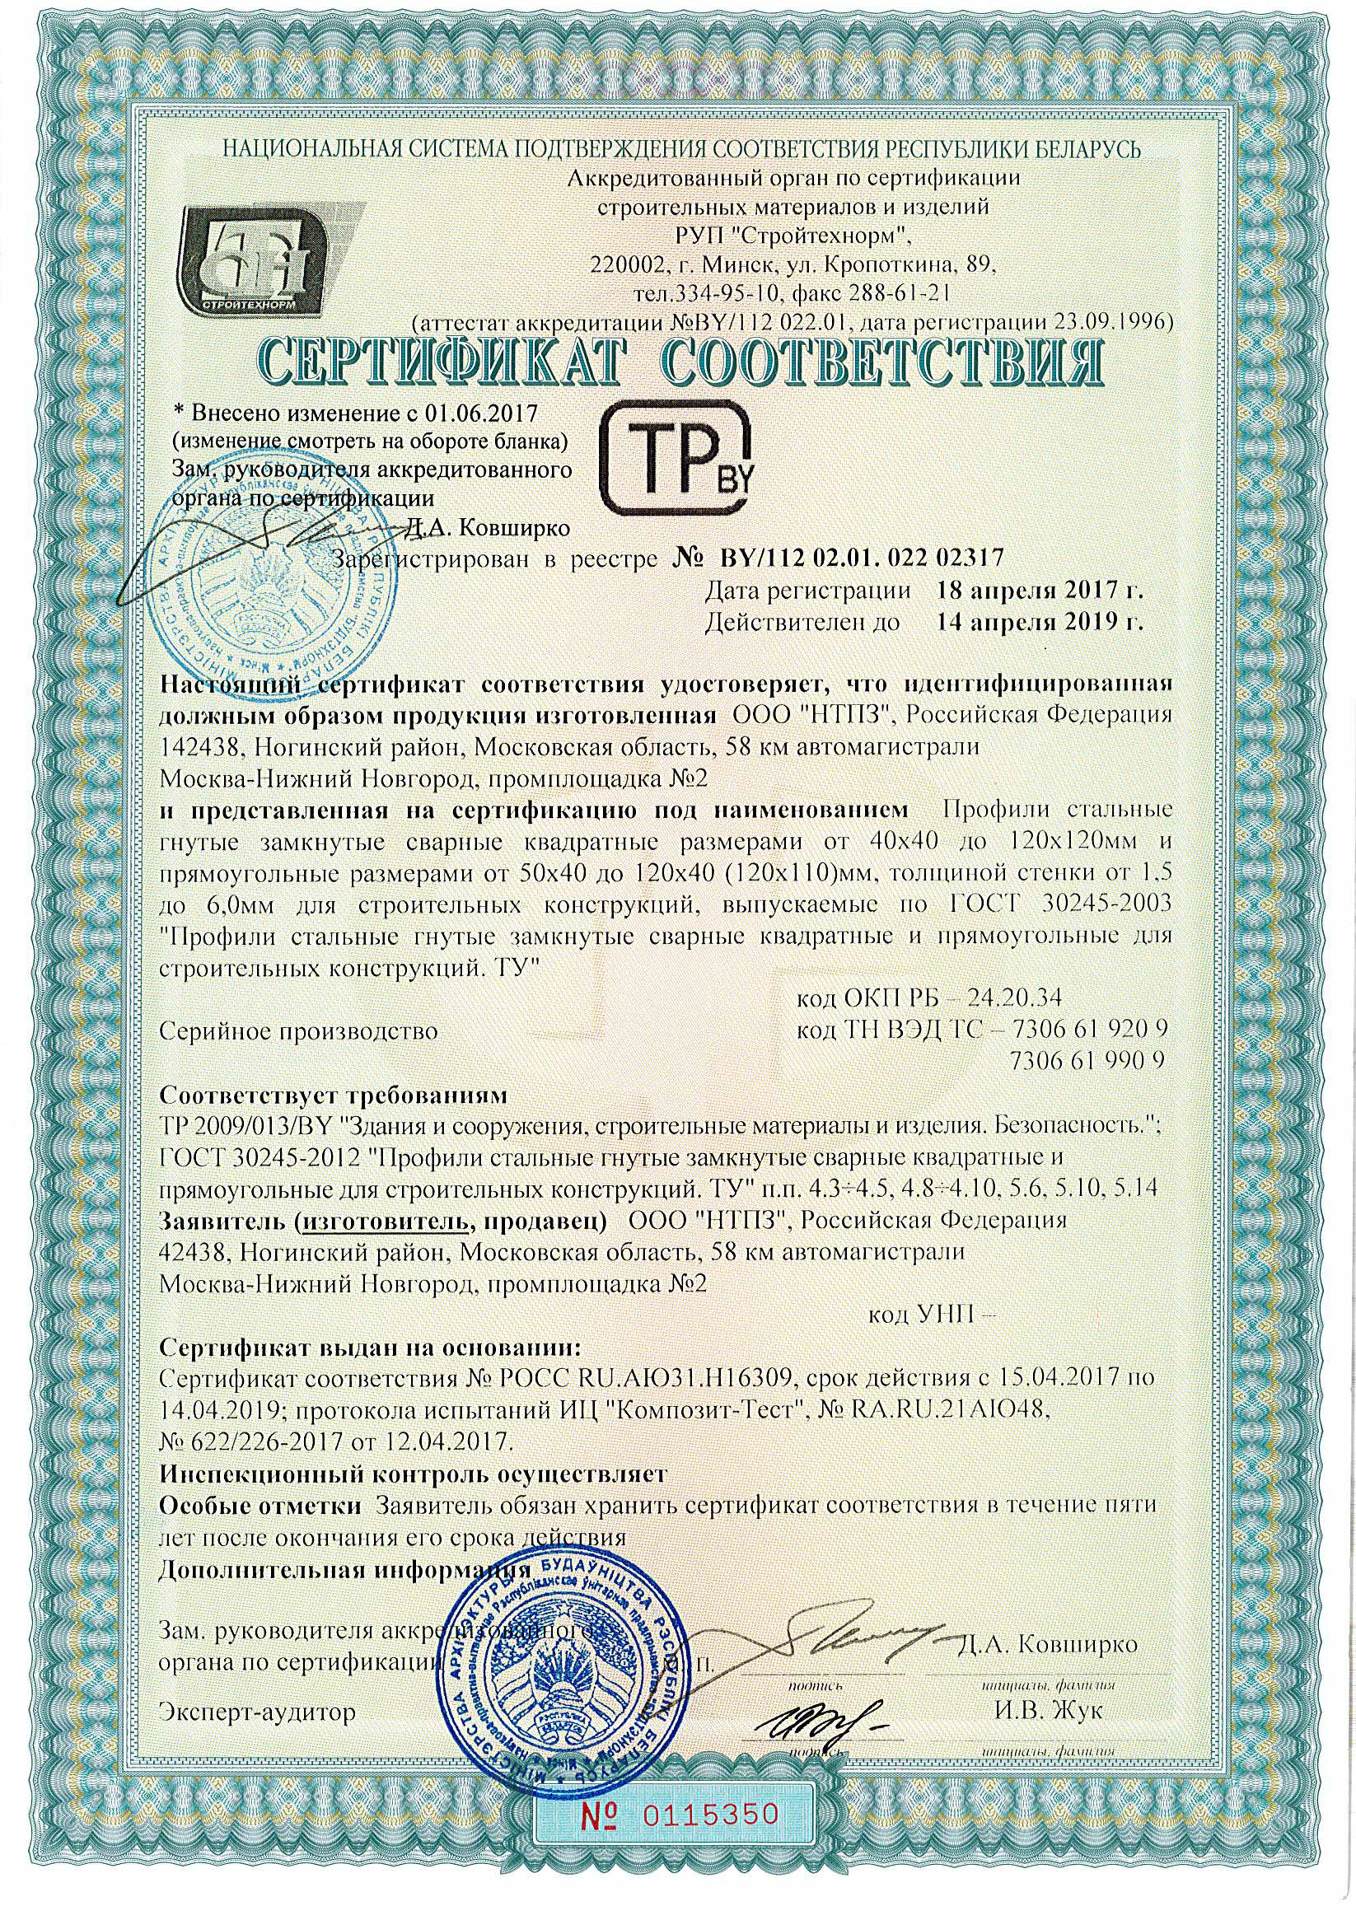 Сертификат соответствия квадратных труб ГОСТ 30245-2003